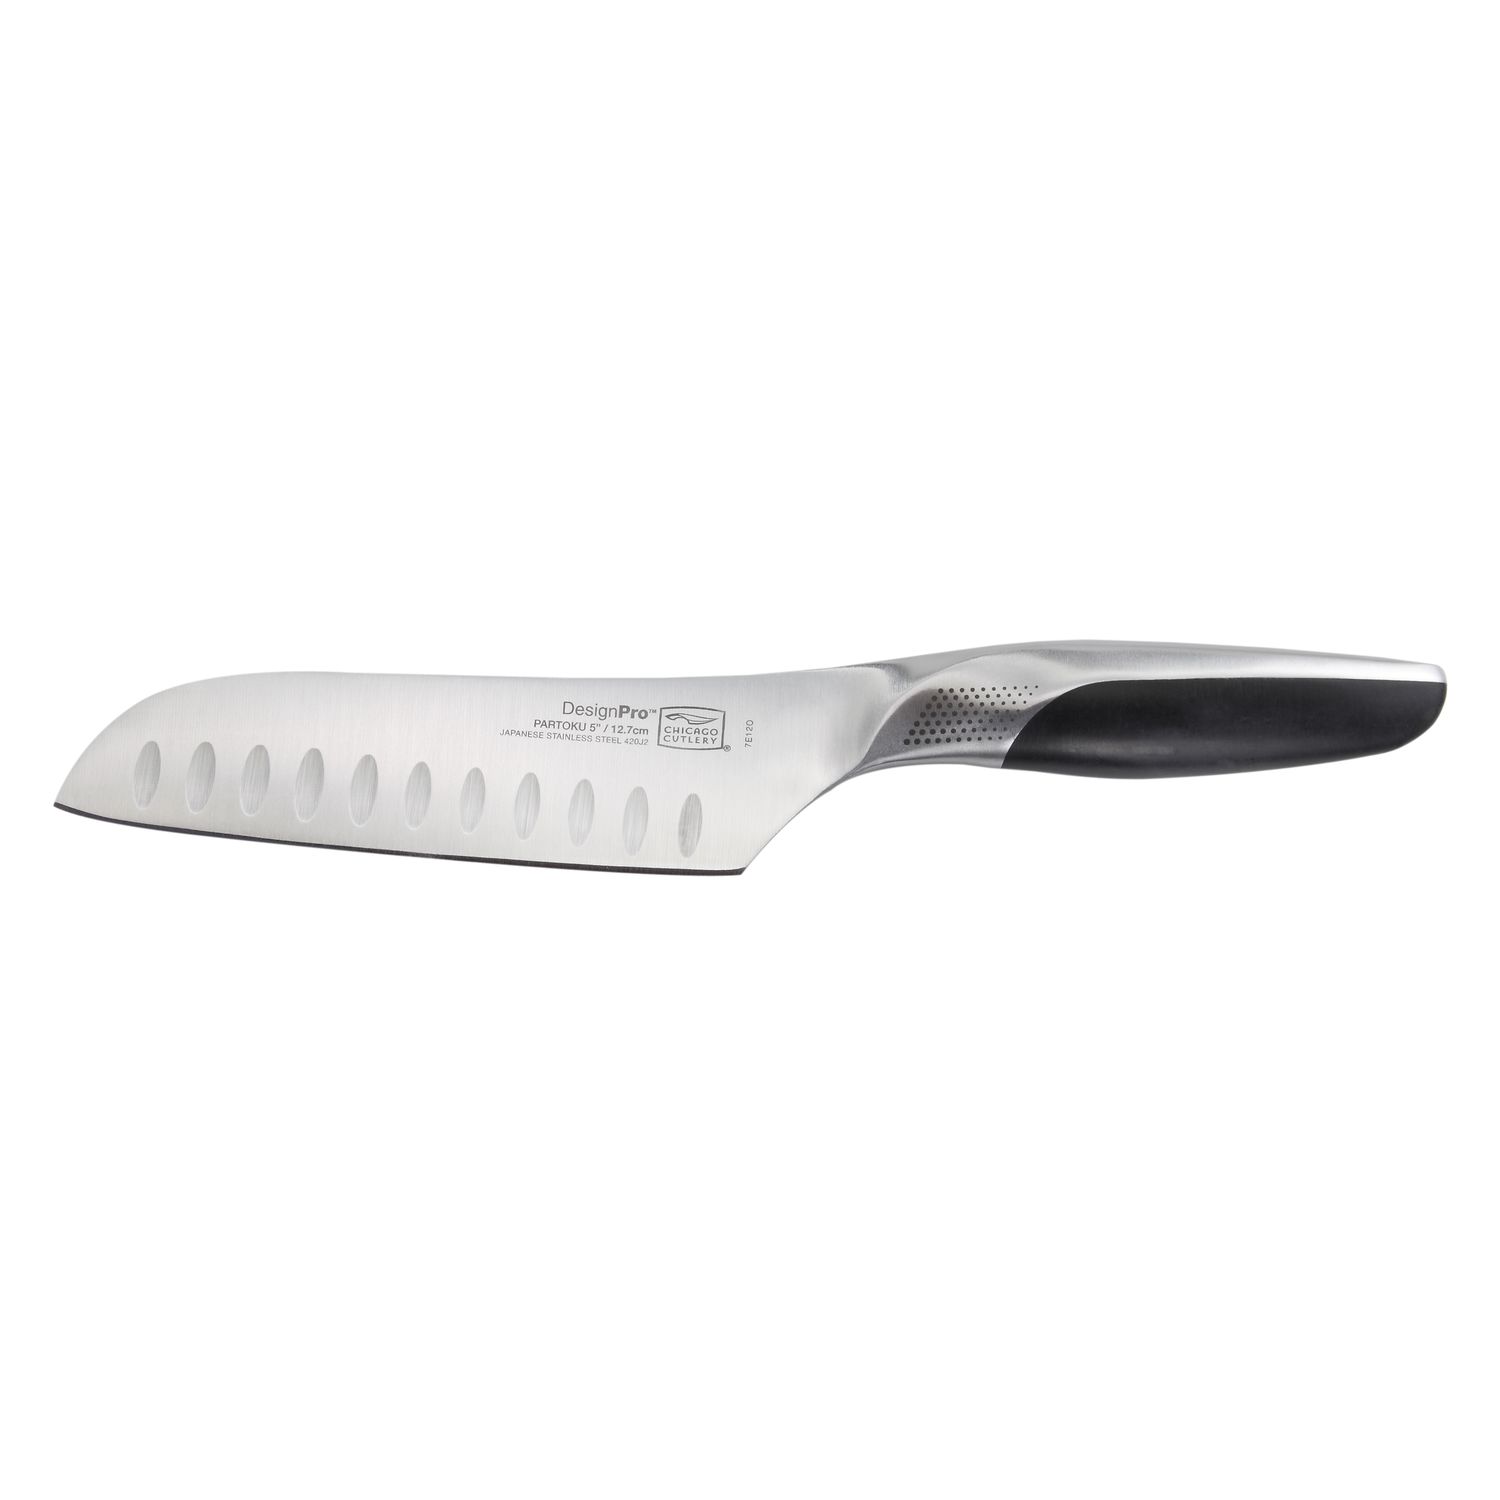 Нож для чистки Chicago Cutlery DesignPro 12,7см нож для чистки pro julia vysotskaya 6 5 см